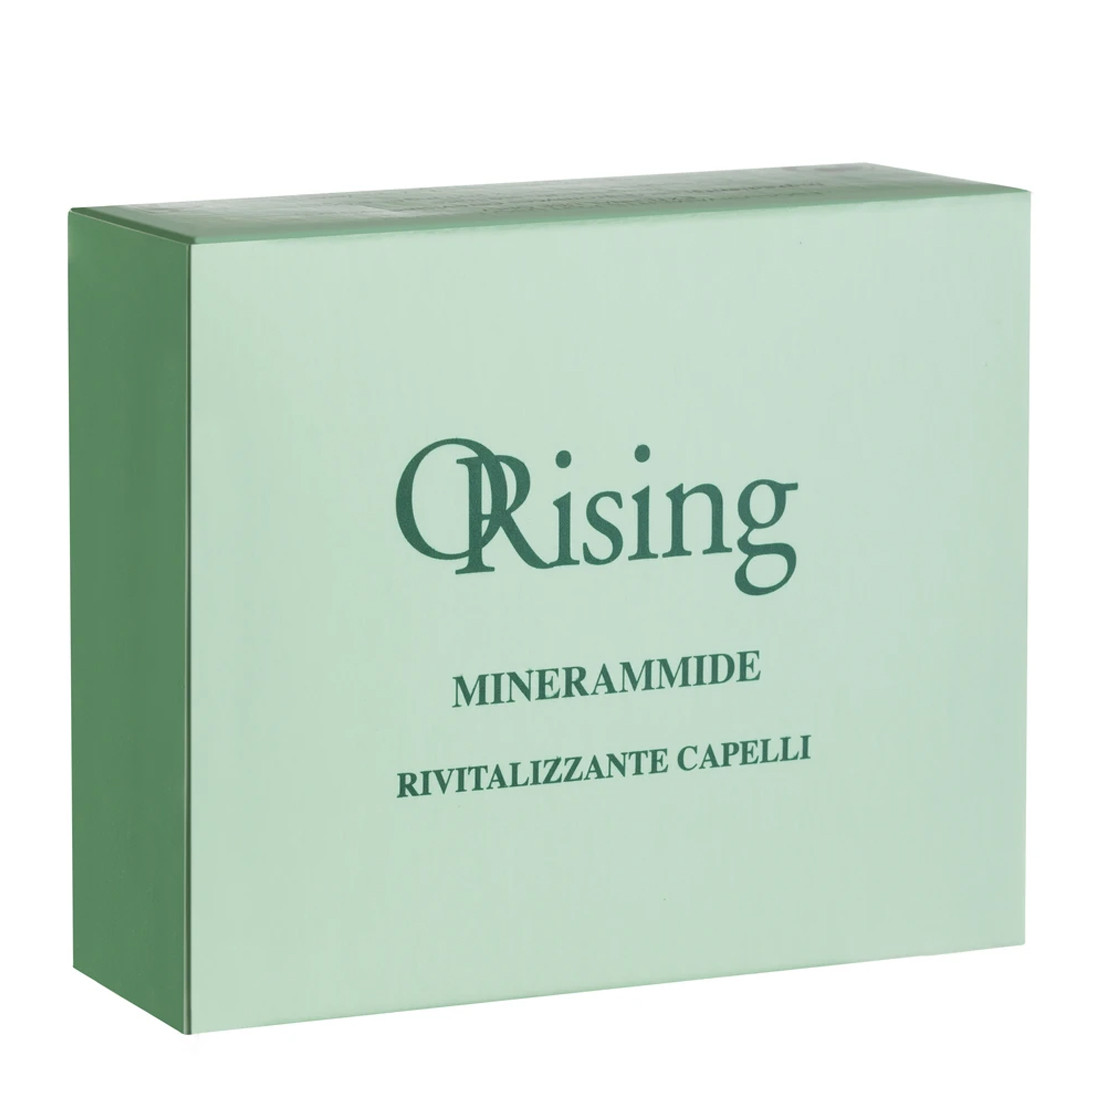 Orising Minerammide - Витамины для наружного применения Миннерамиды